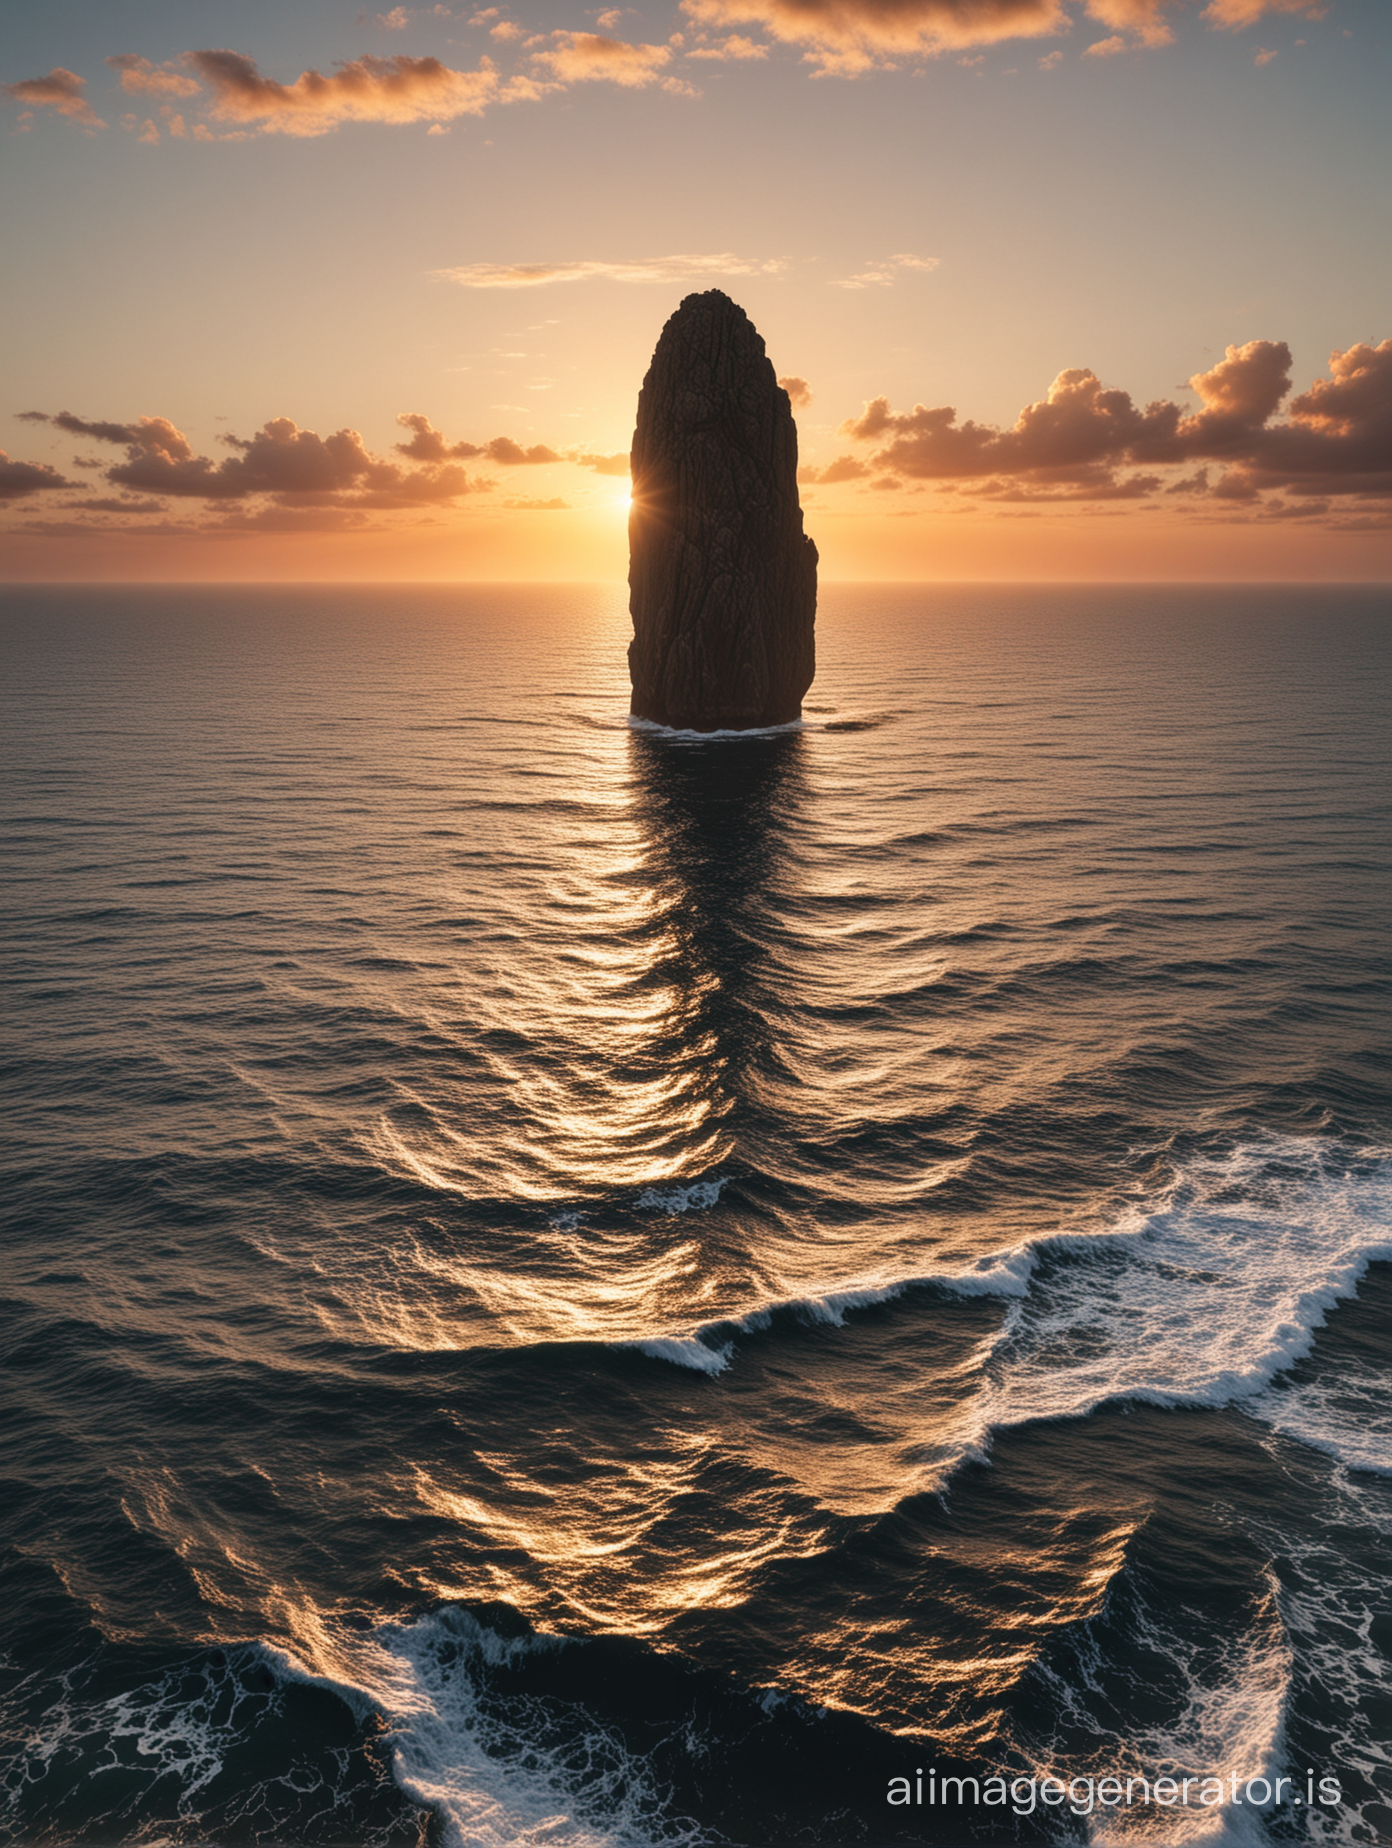 A high, slender rock towering over an endless ocean  în the sunset. No land în view.